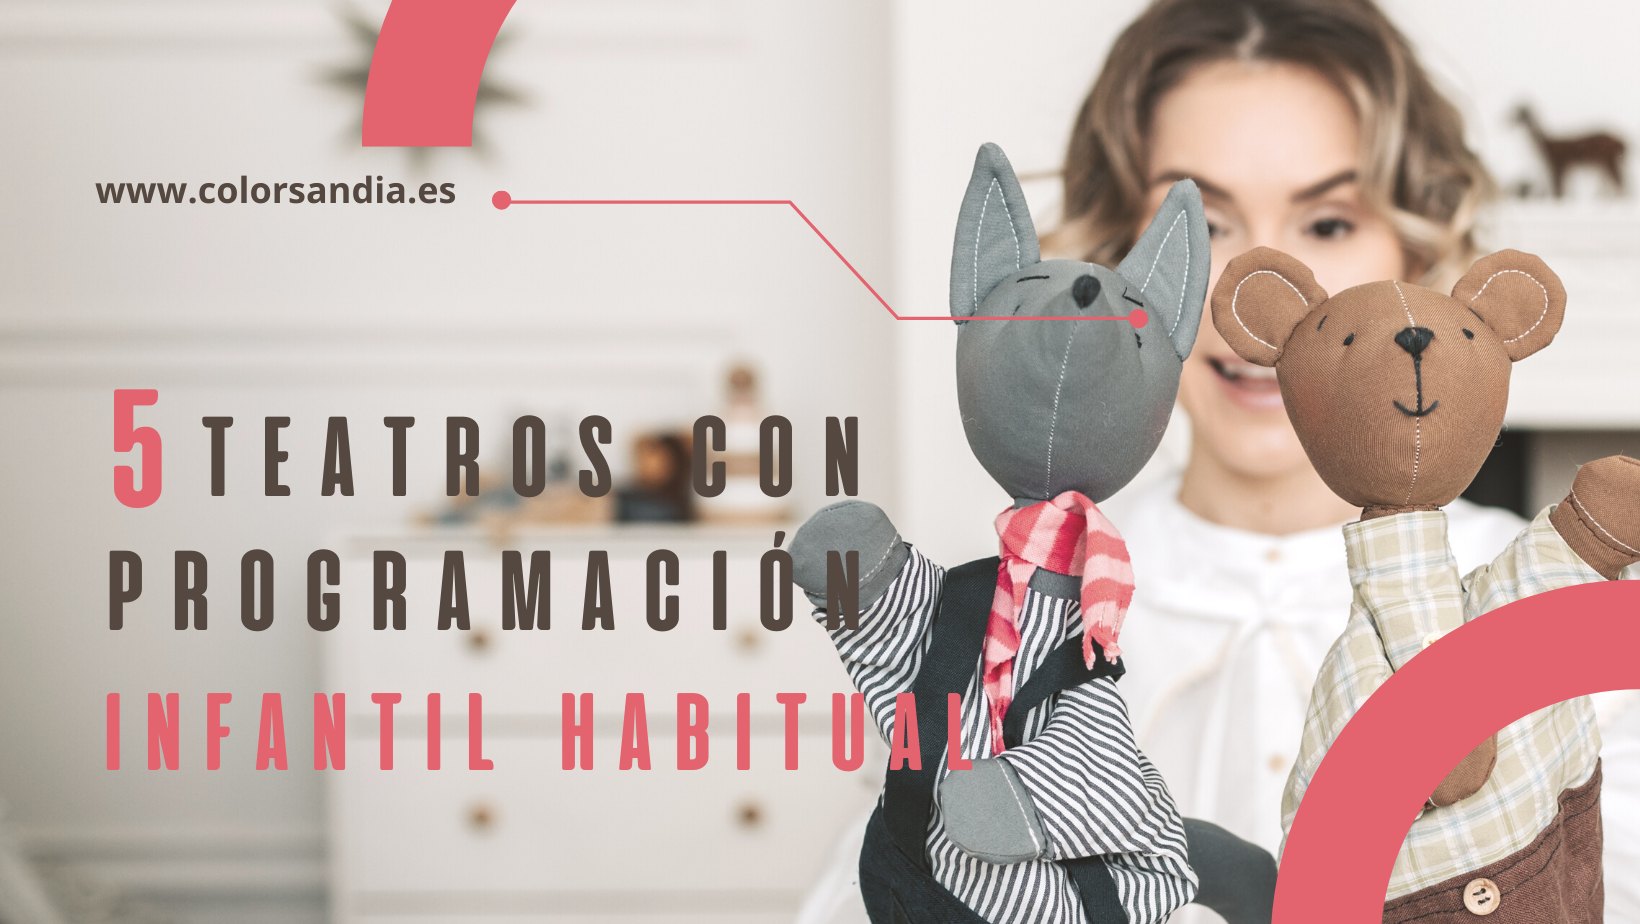 5 teatros con programación infantil habitual en Madrid